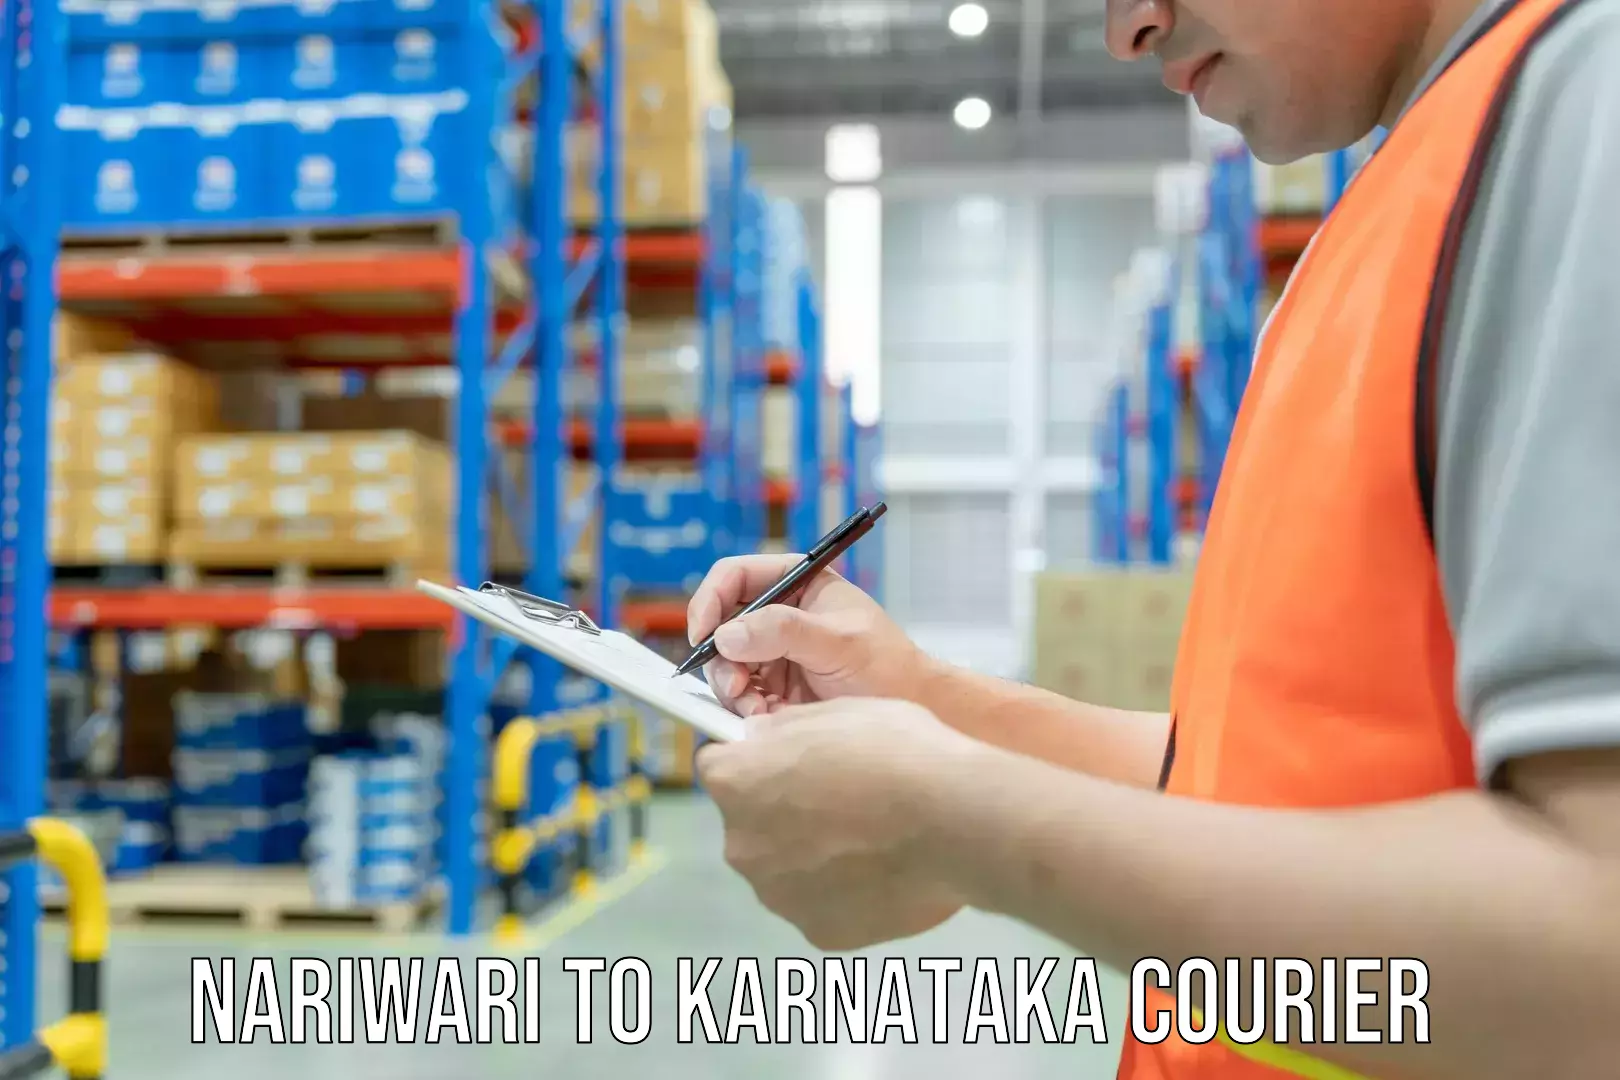 Furniture relocation services Nariwari to Karnataka